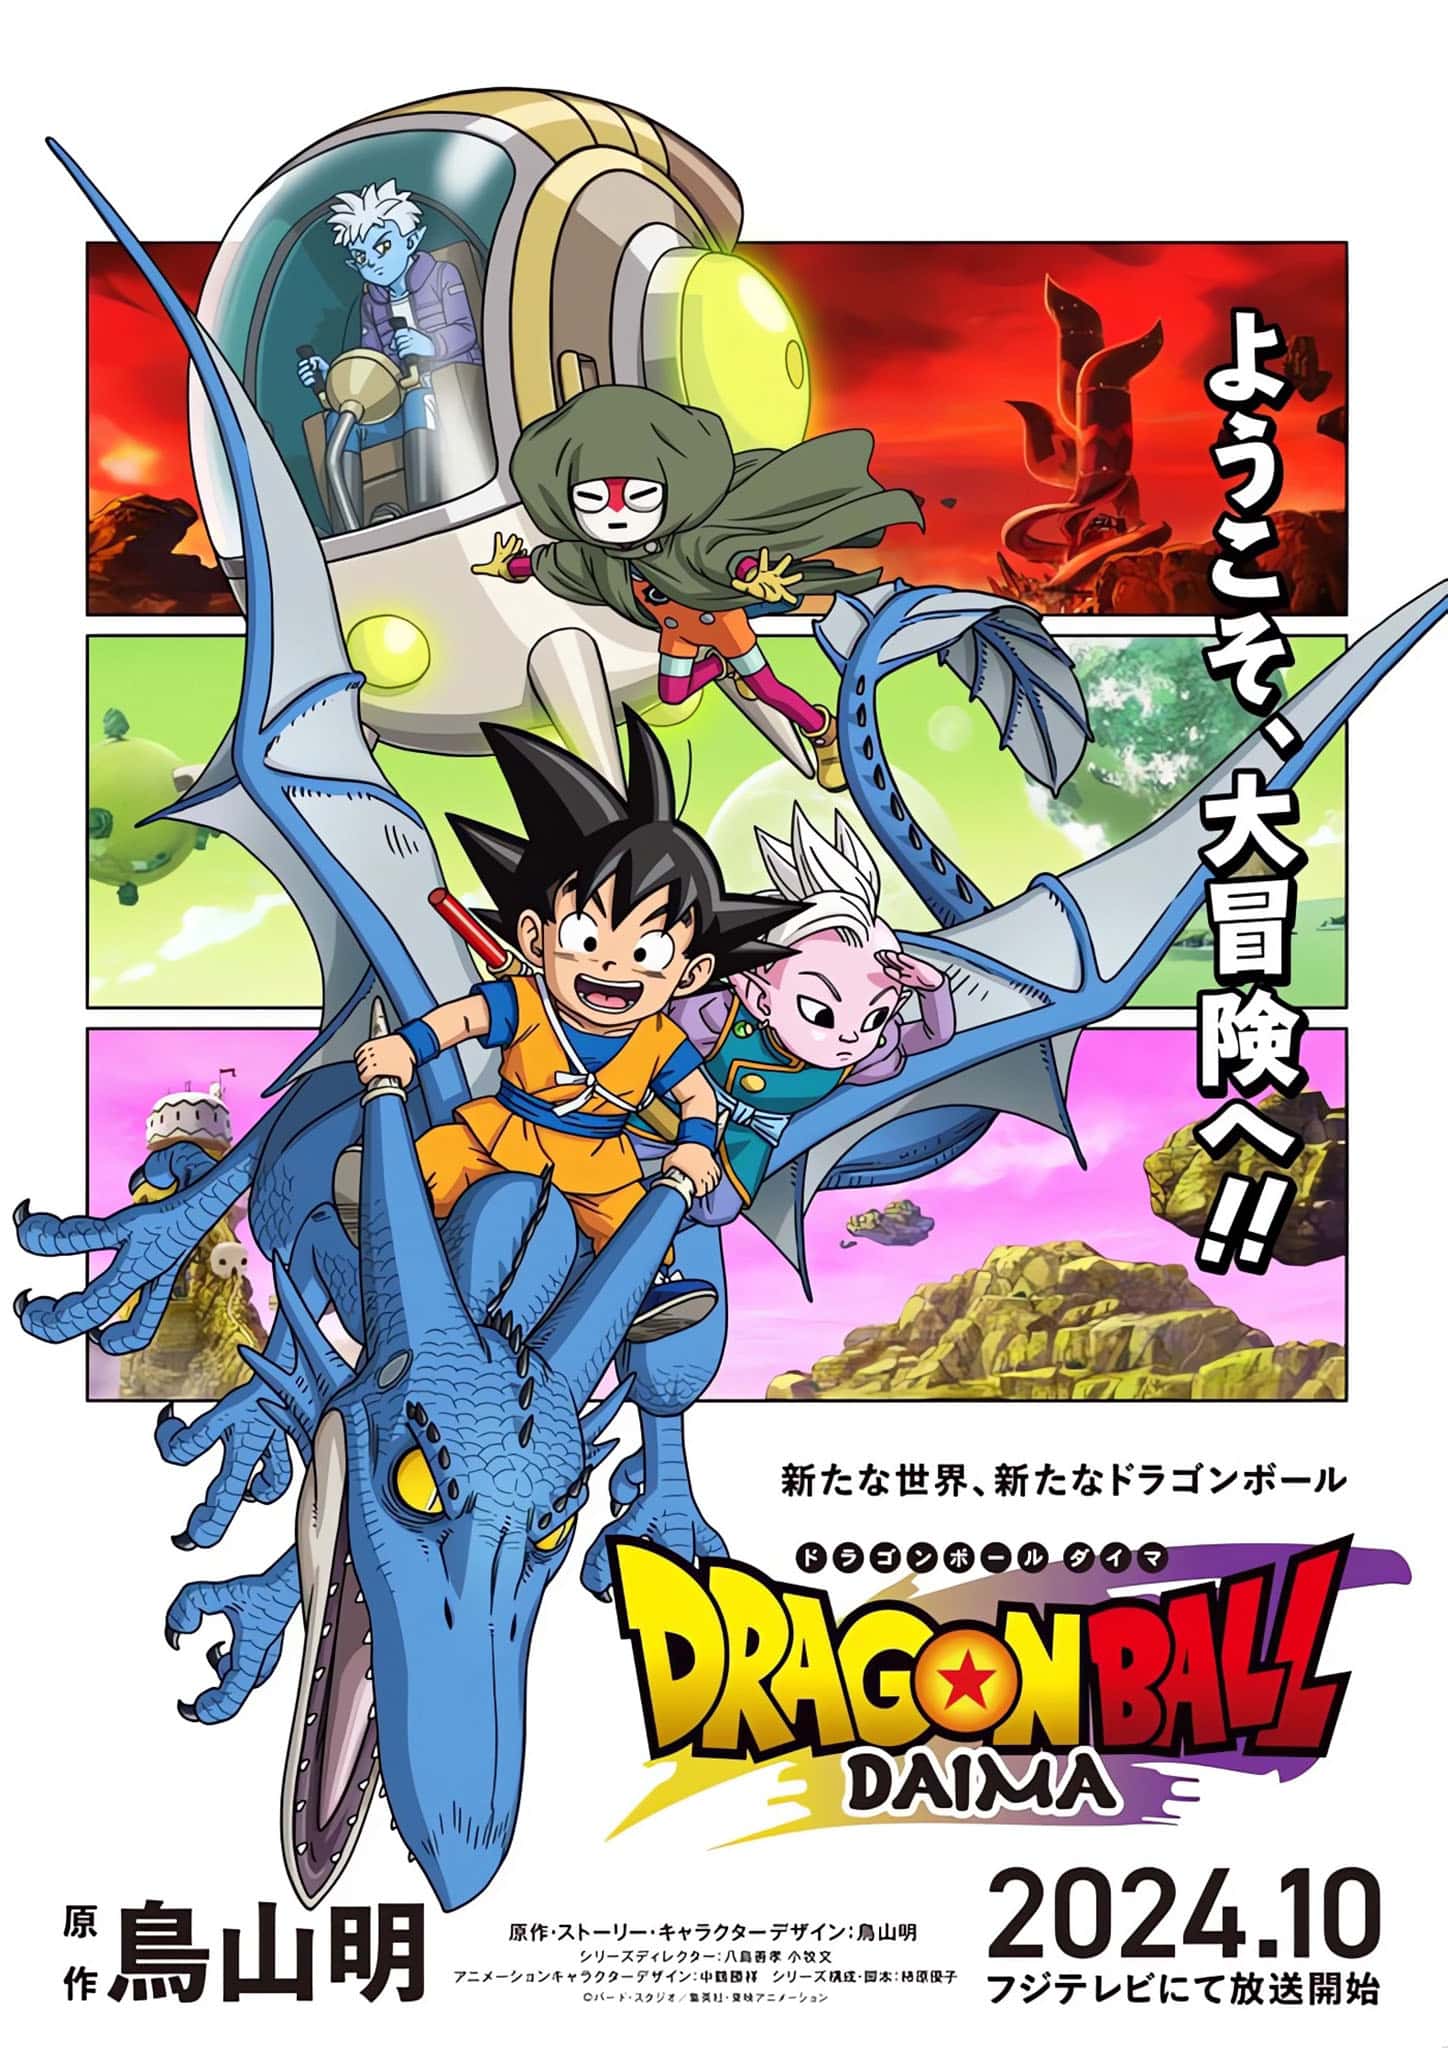 Premier visuel pour l'anime Dragon Ball DAIMA.